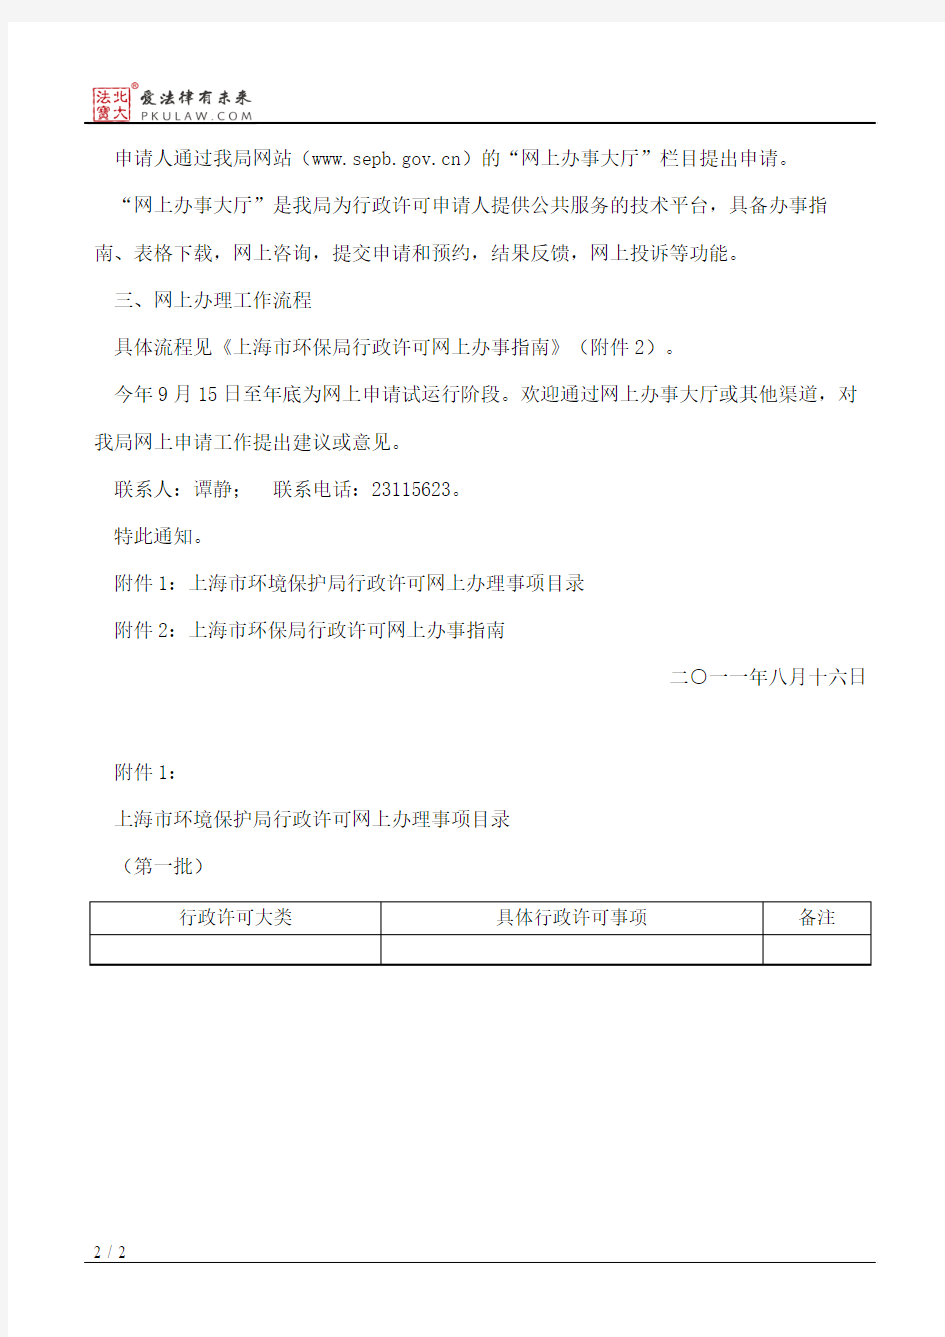 上海市环保局关于开展行政许可网上办理工作的通知